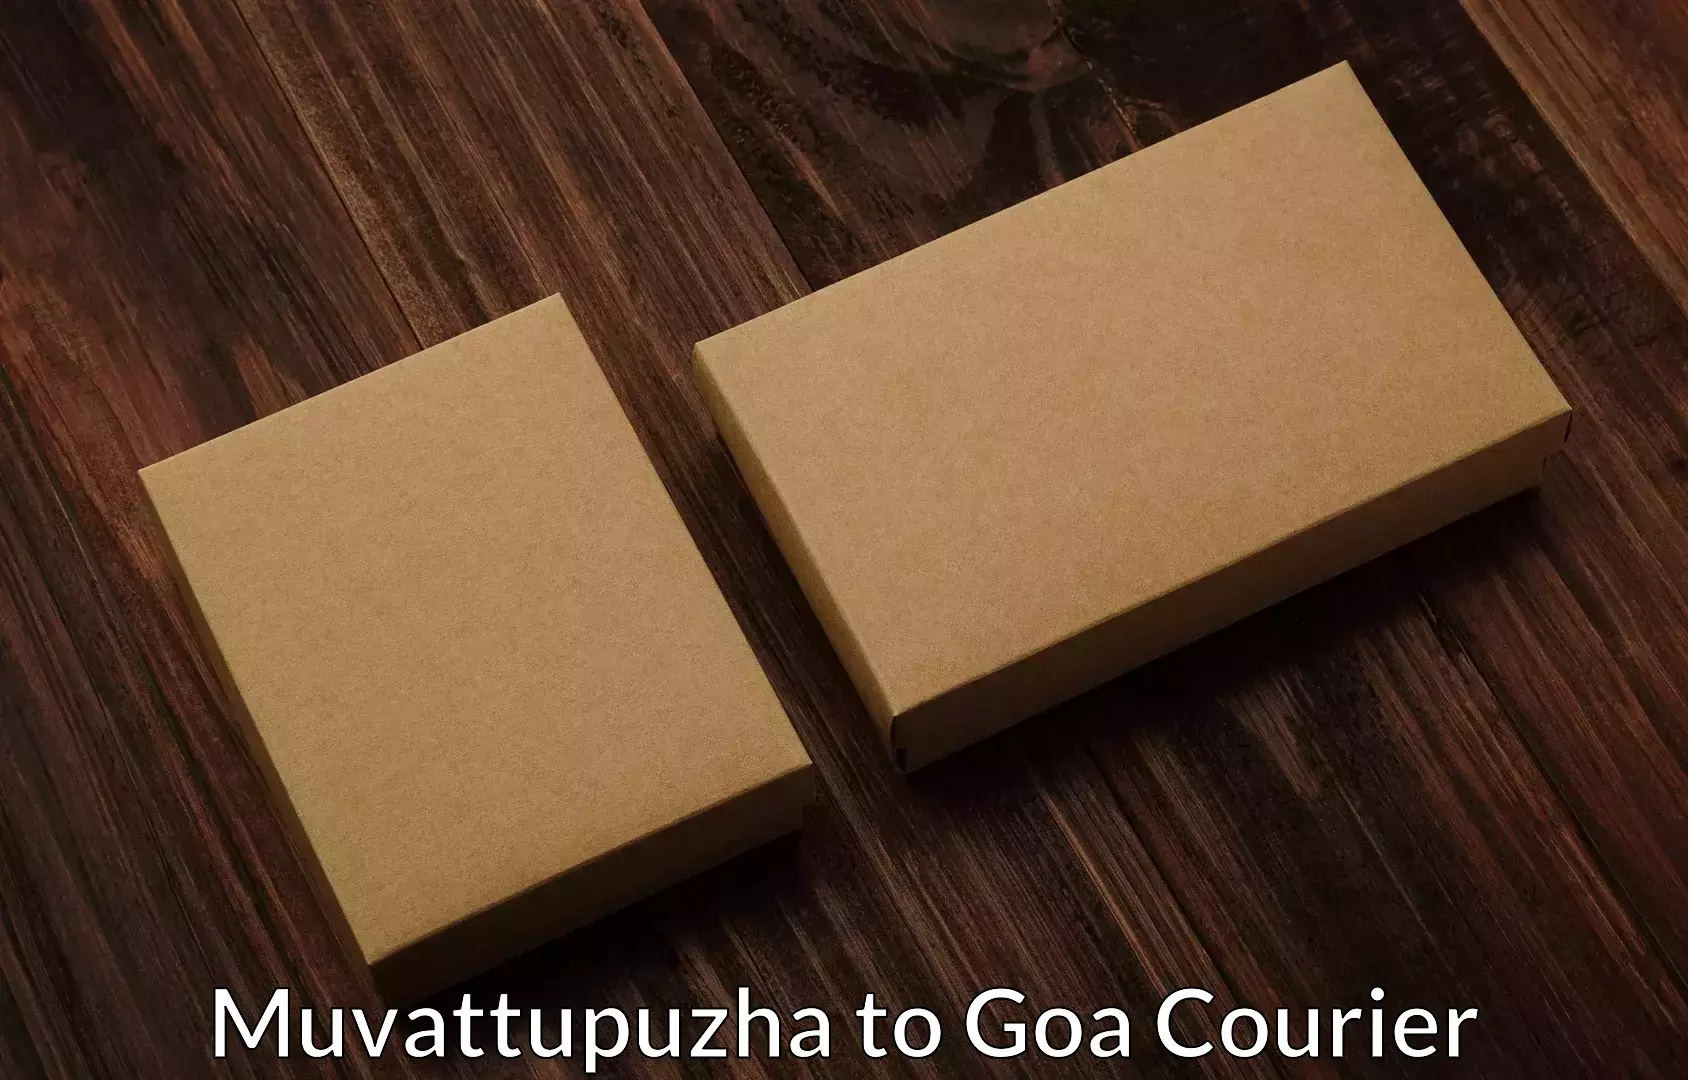 Professional packing and transport Muvattupuzha to Panaji